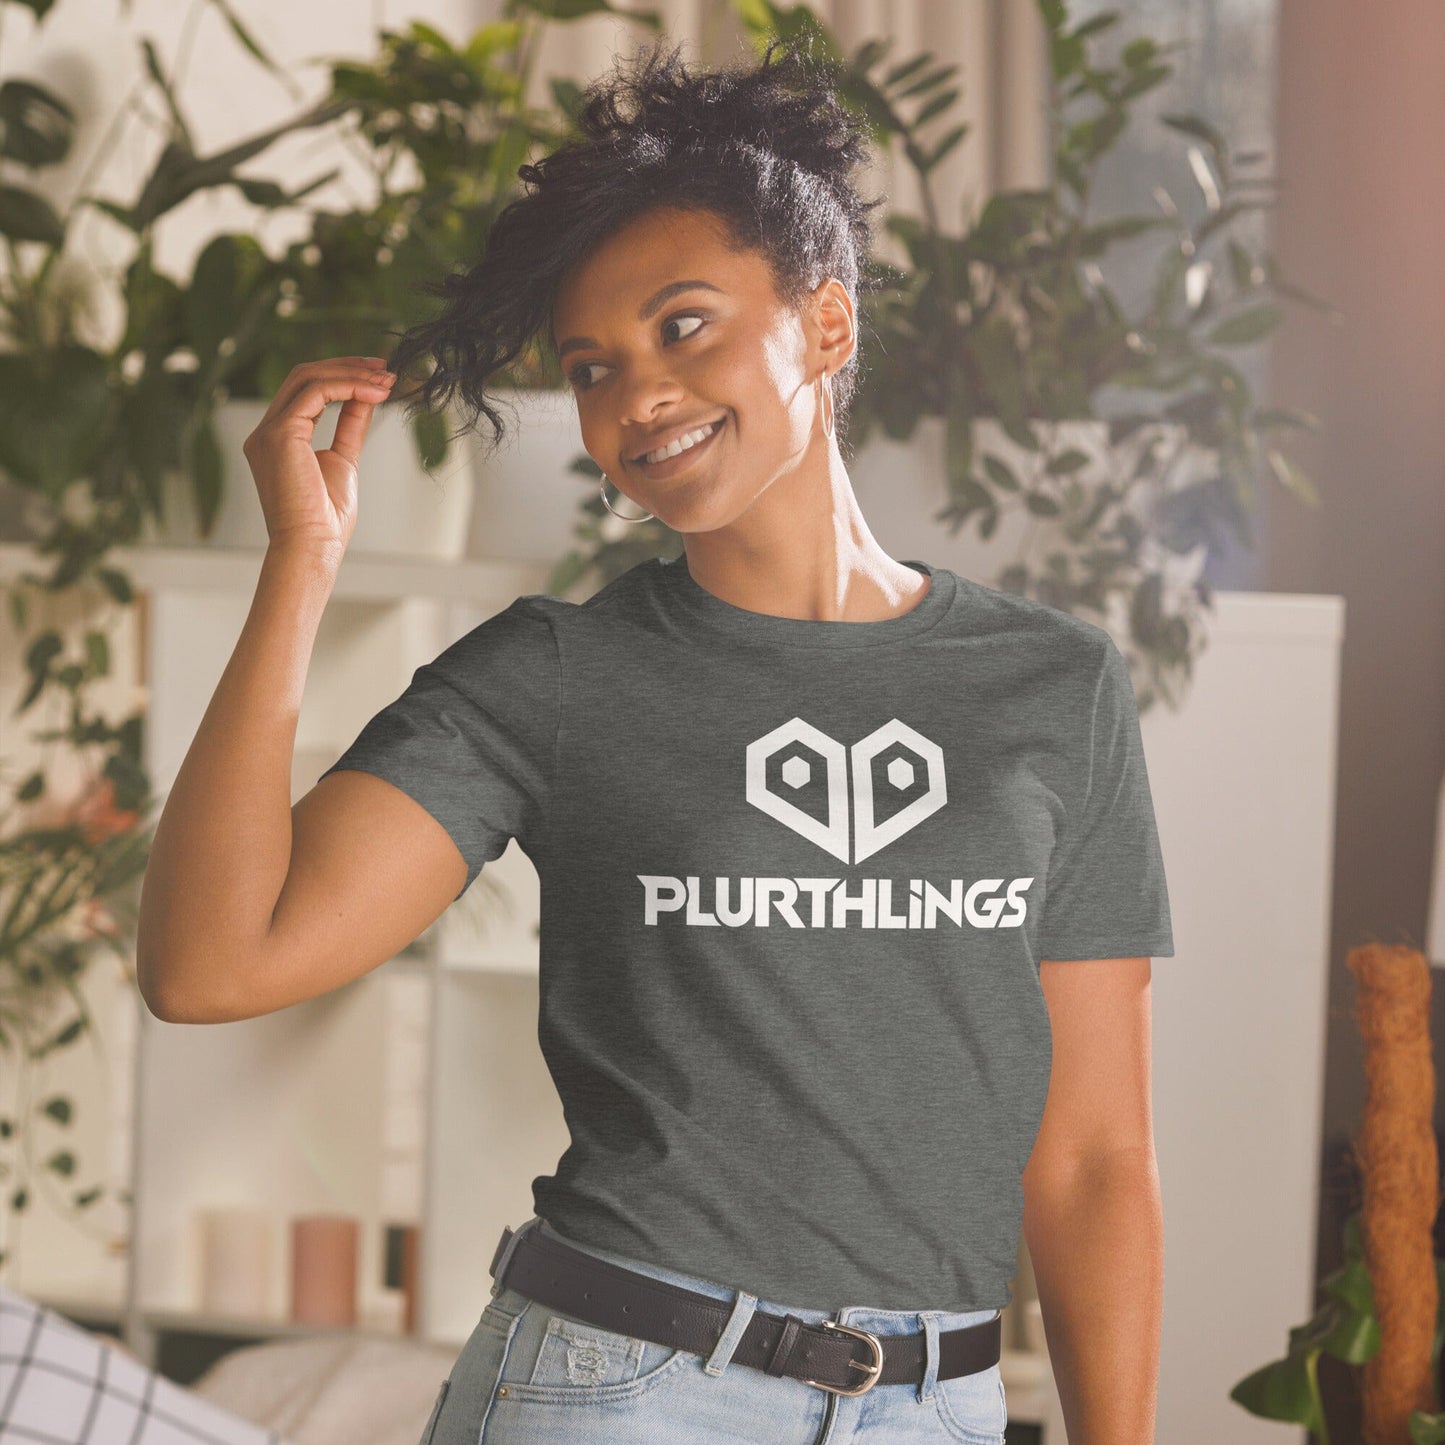 Plurthlings Heart Logo Short-Sleeve Unisex T-Shirt PLURTHLINGS Dark Heather S 